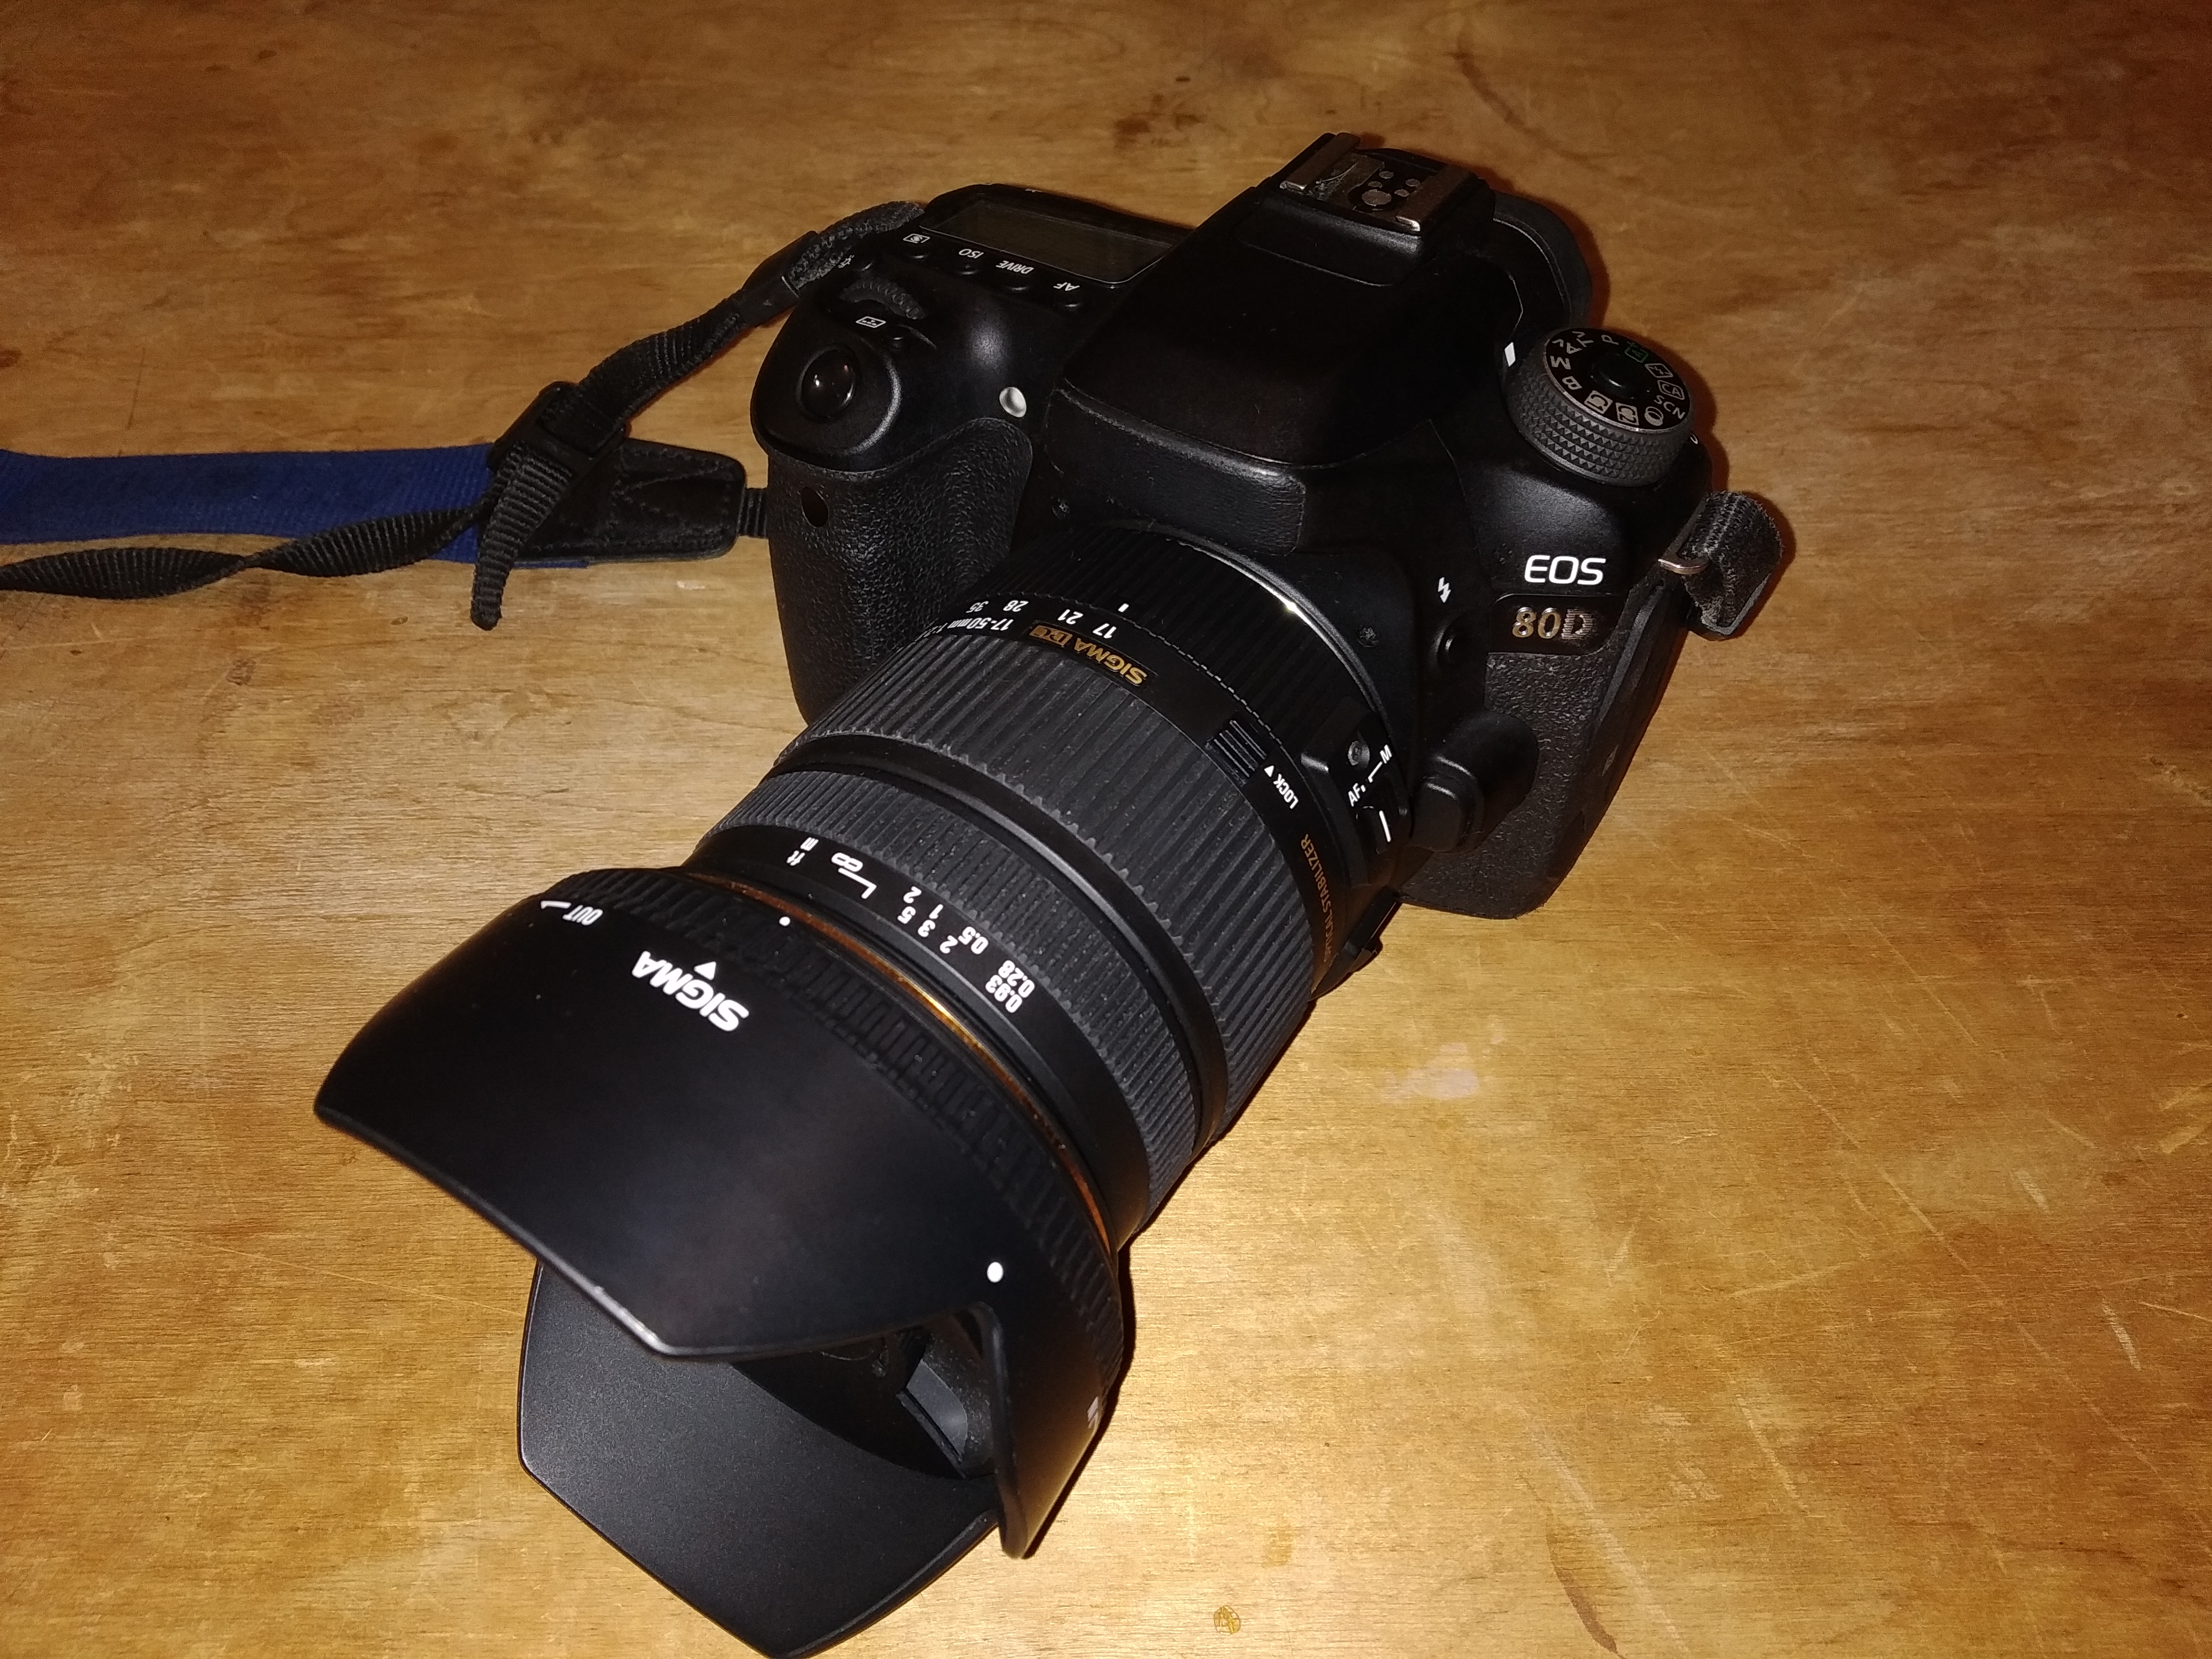 Canon EOS 80D + Sigma 17-50/2.8 EX HSM OS